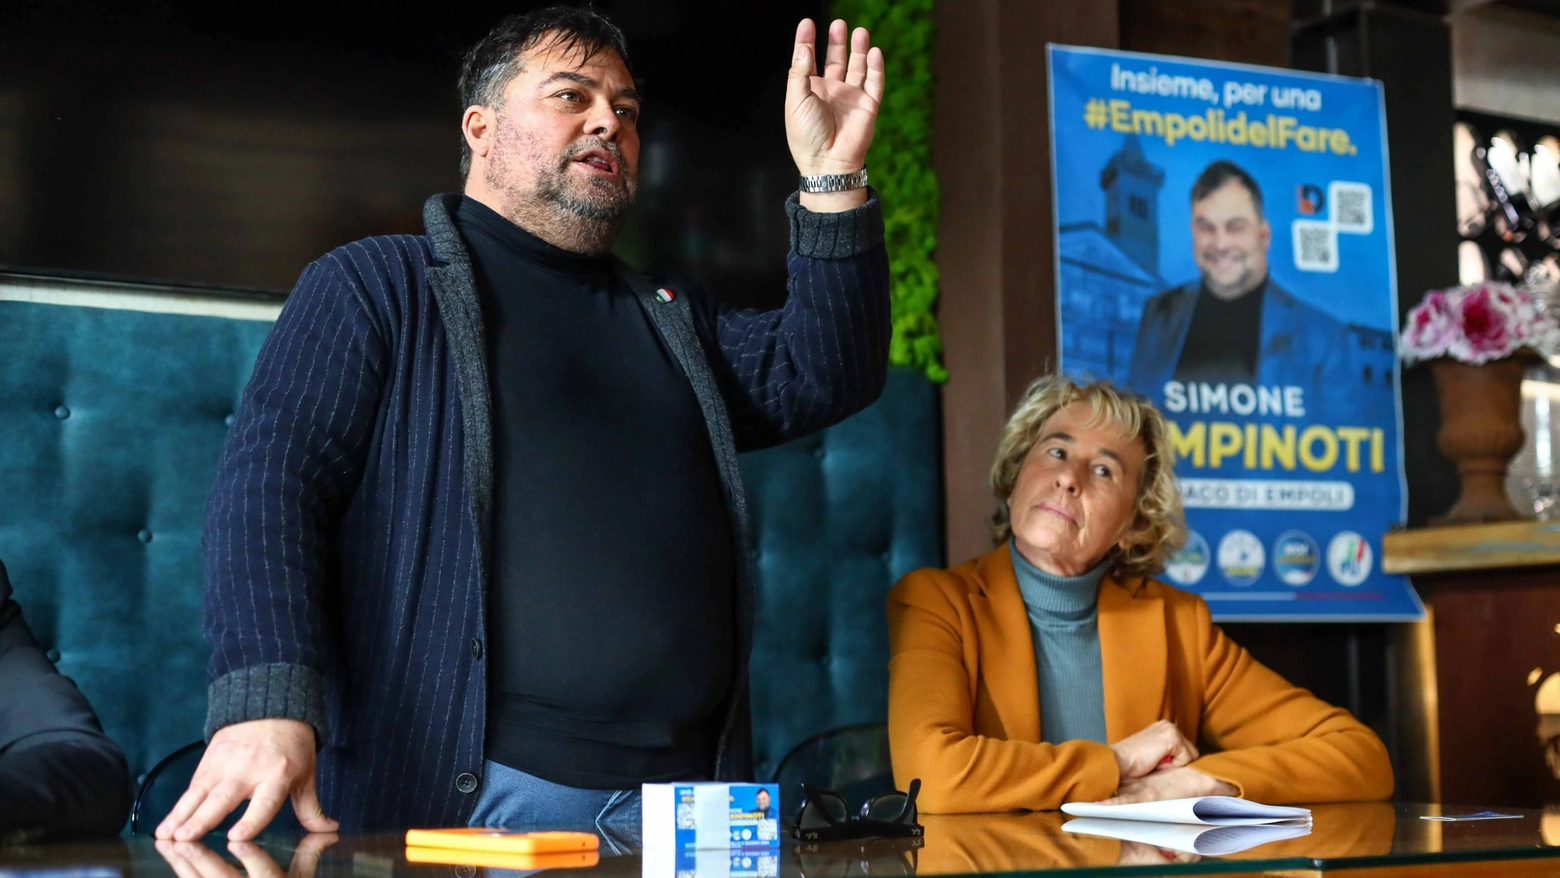 Nel mirino Simone Campinoti, candidato del centrodestra a Empoli. “Il mio peso è un tema sensibie, è anche colpa di un cancro avuto 10 anni fa. Parlate di politica”